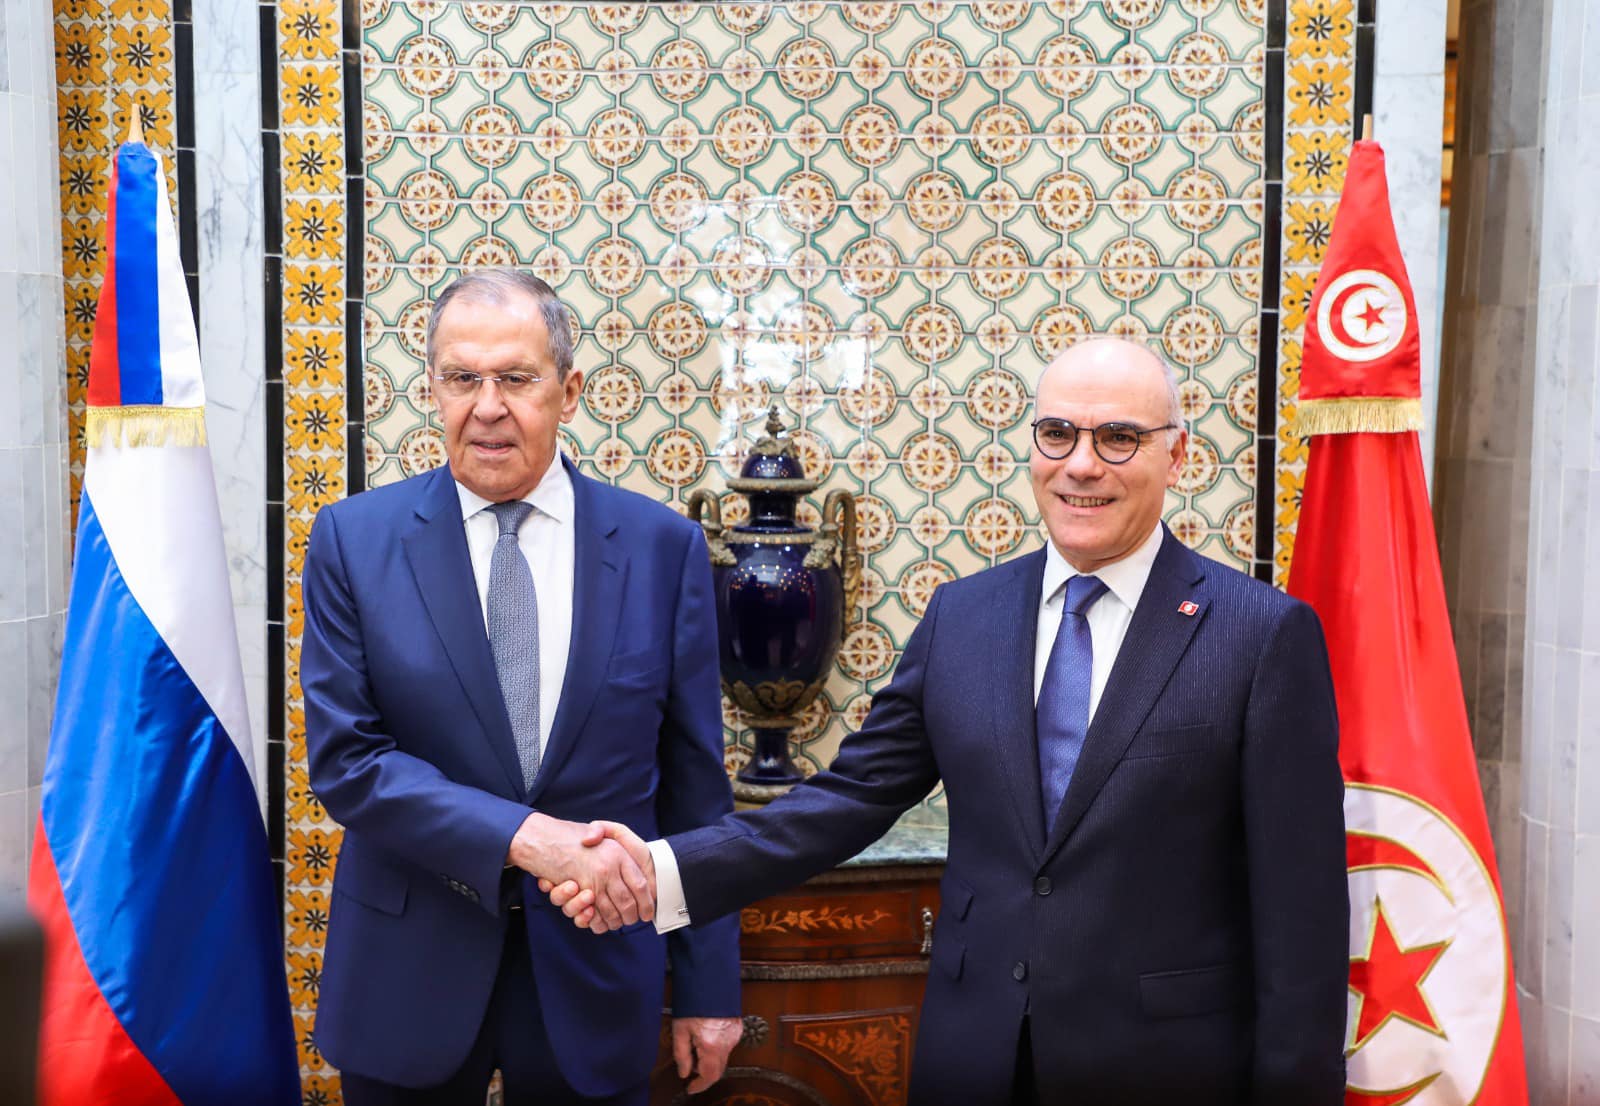 Les échanges commerciaux entre la Tunisie et la Russie objet d’une rencontre entre Nabil Ammar et Sergueï Lavrov